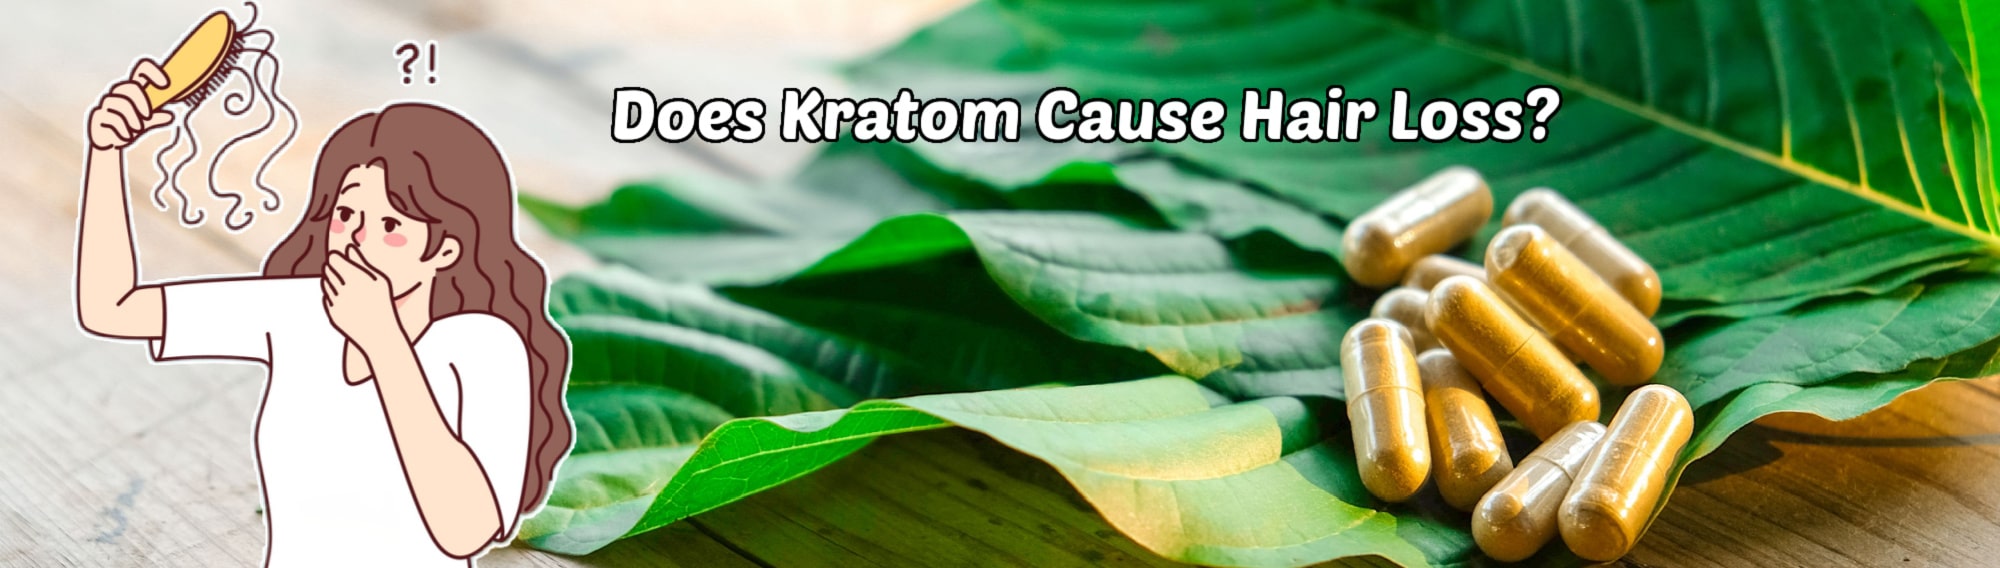 Kratom Hair Loss: Does Kratom Cause Hair Loss?